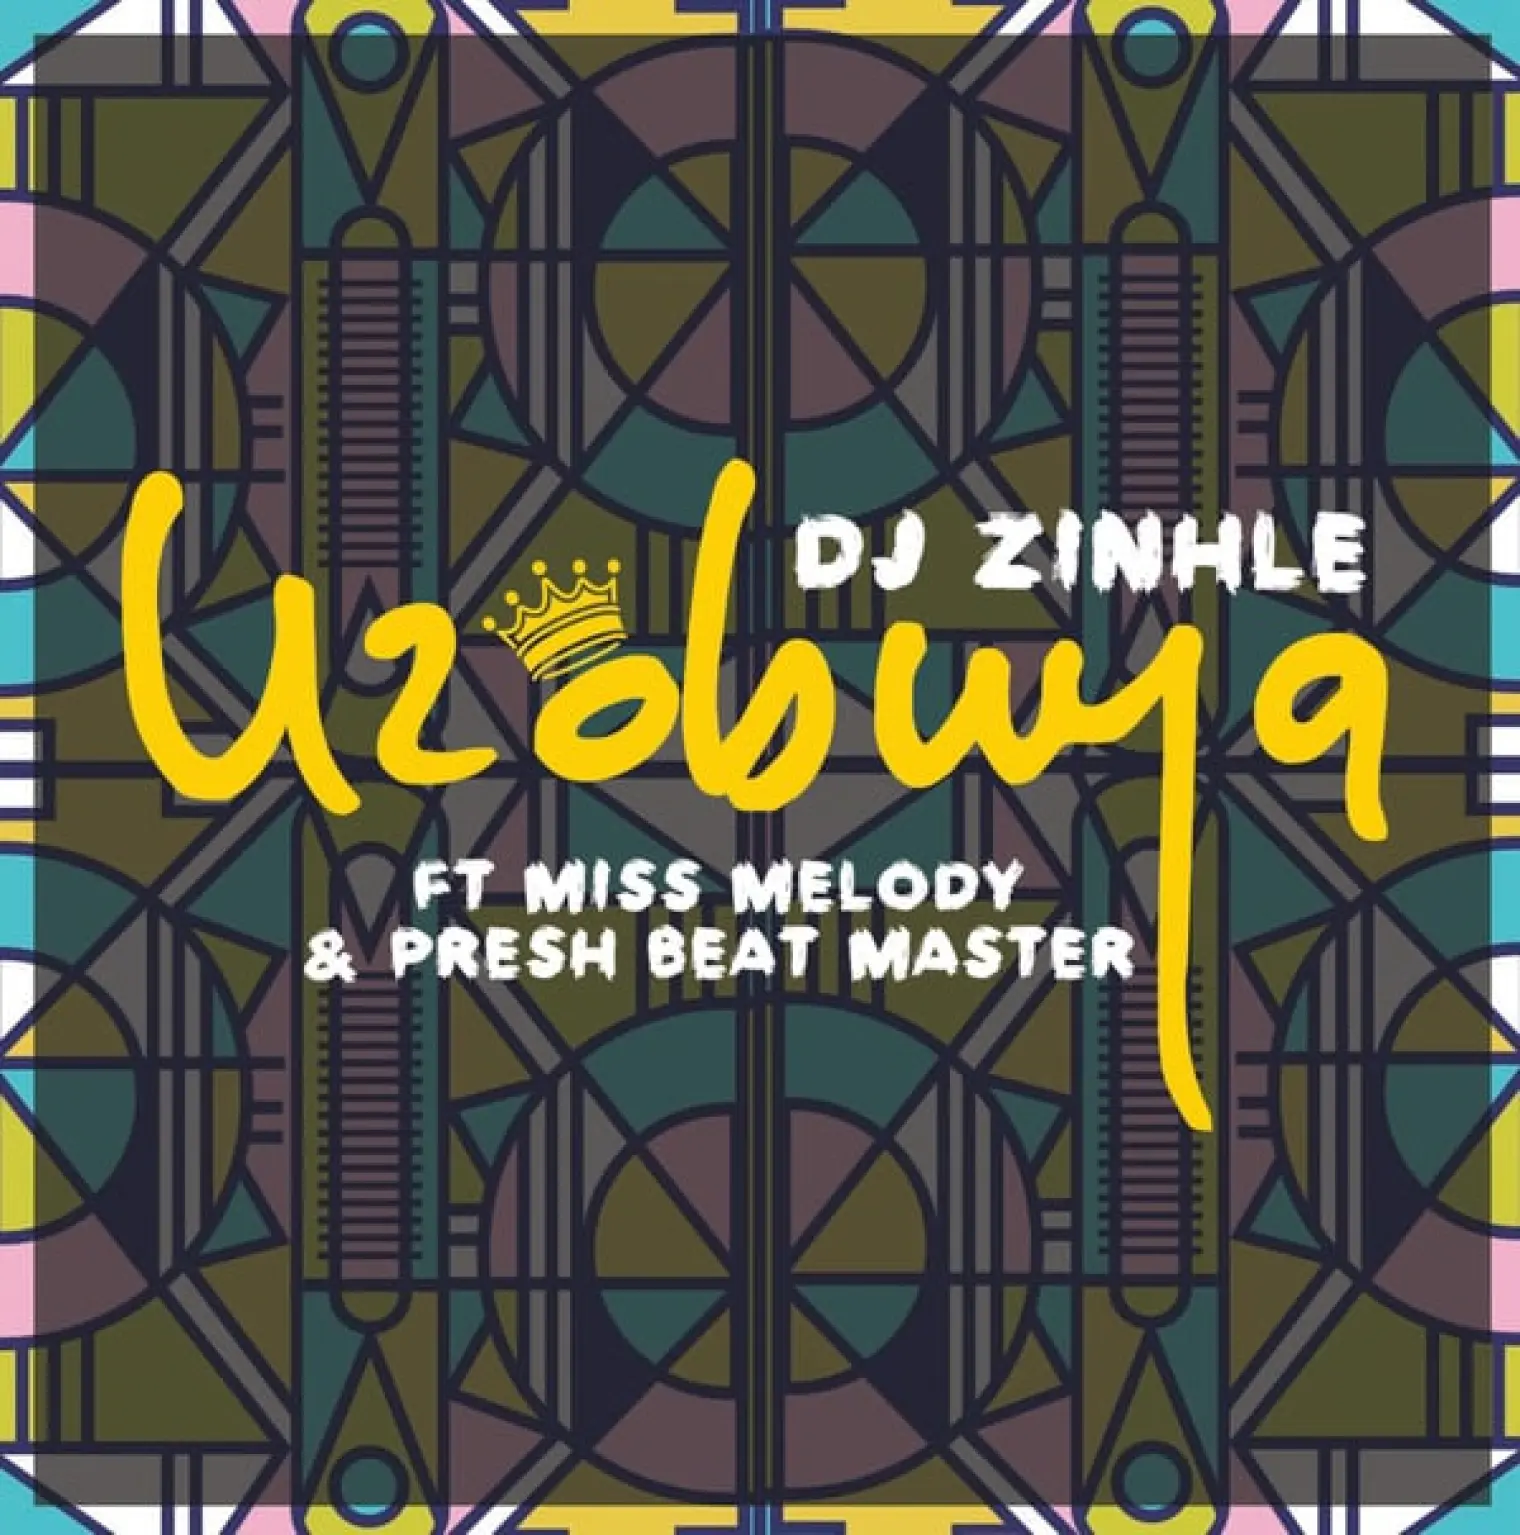 Uzobuya -  DJ Zinhle 